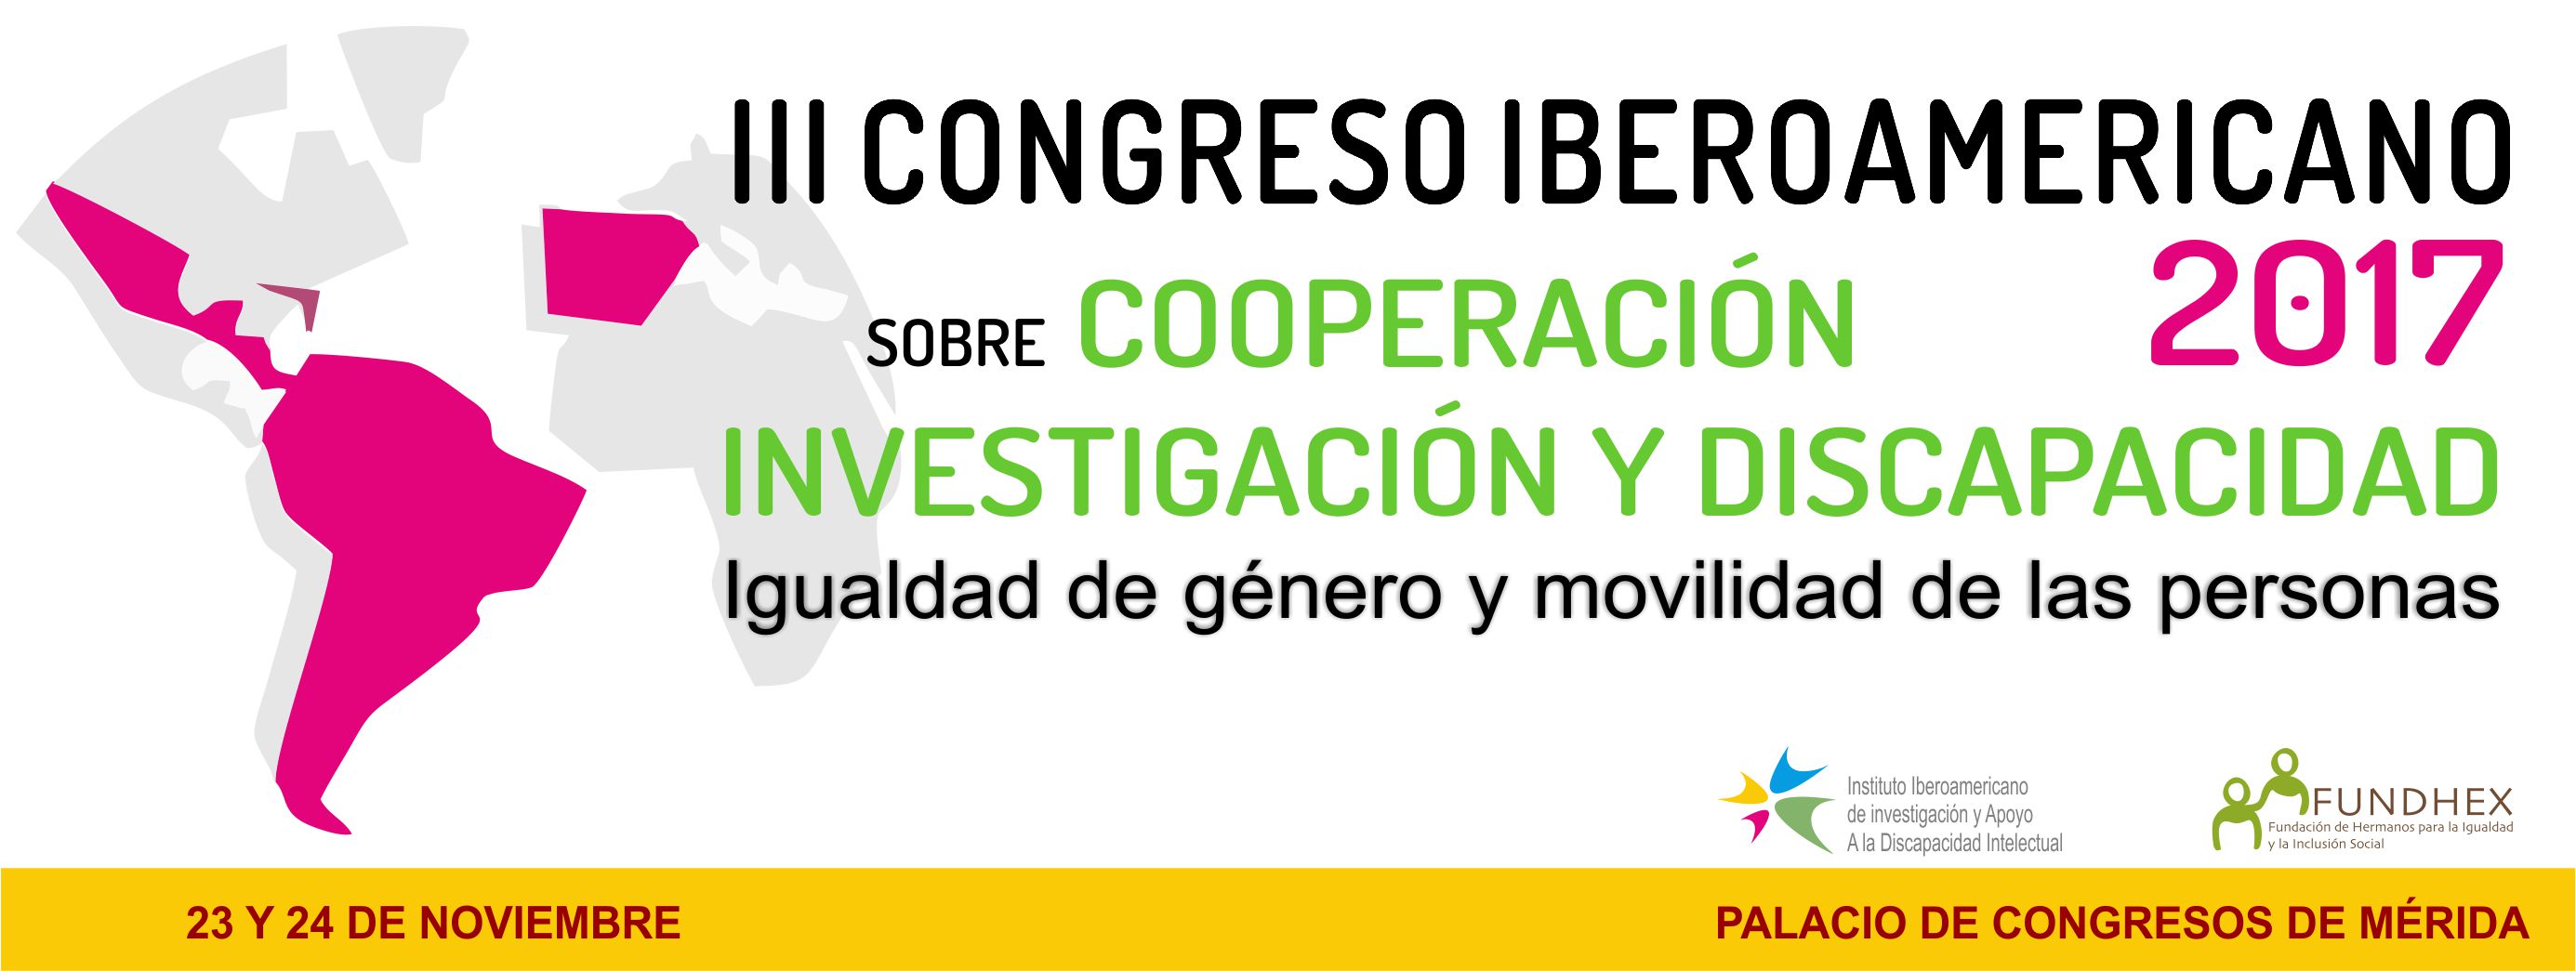 congreso-iberoamericano-investigacion-capacidad-cartel